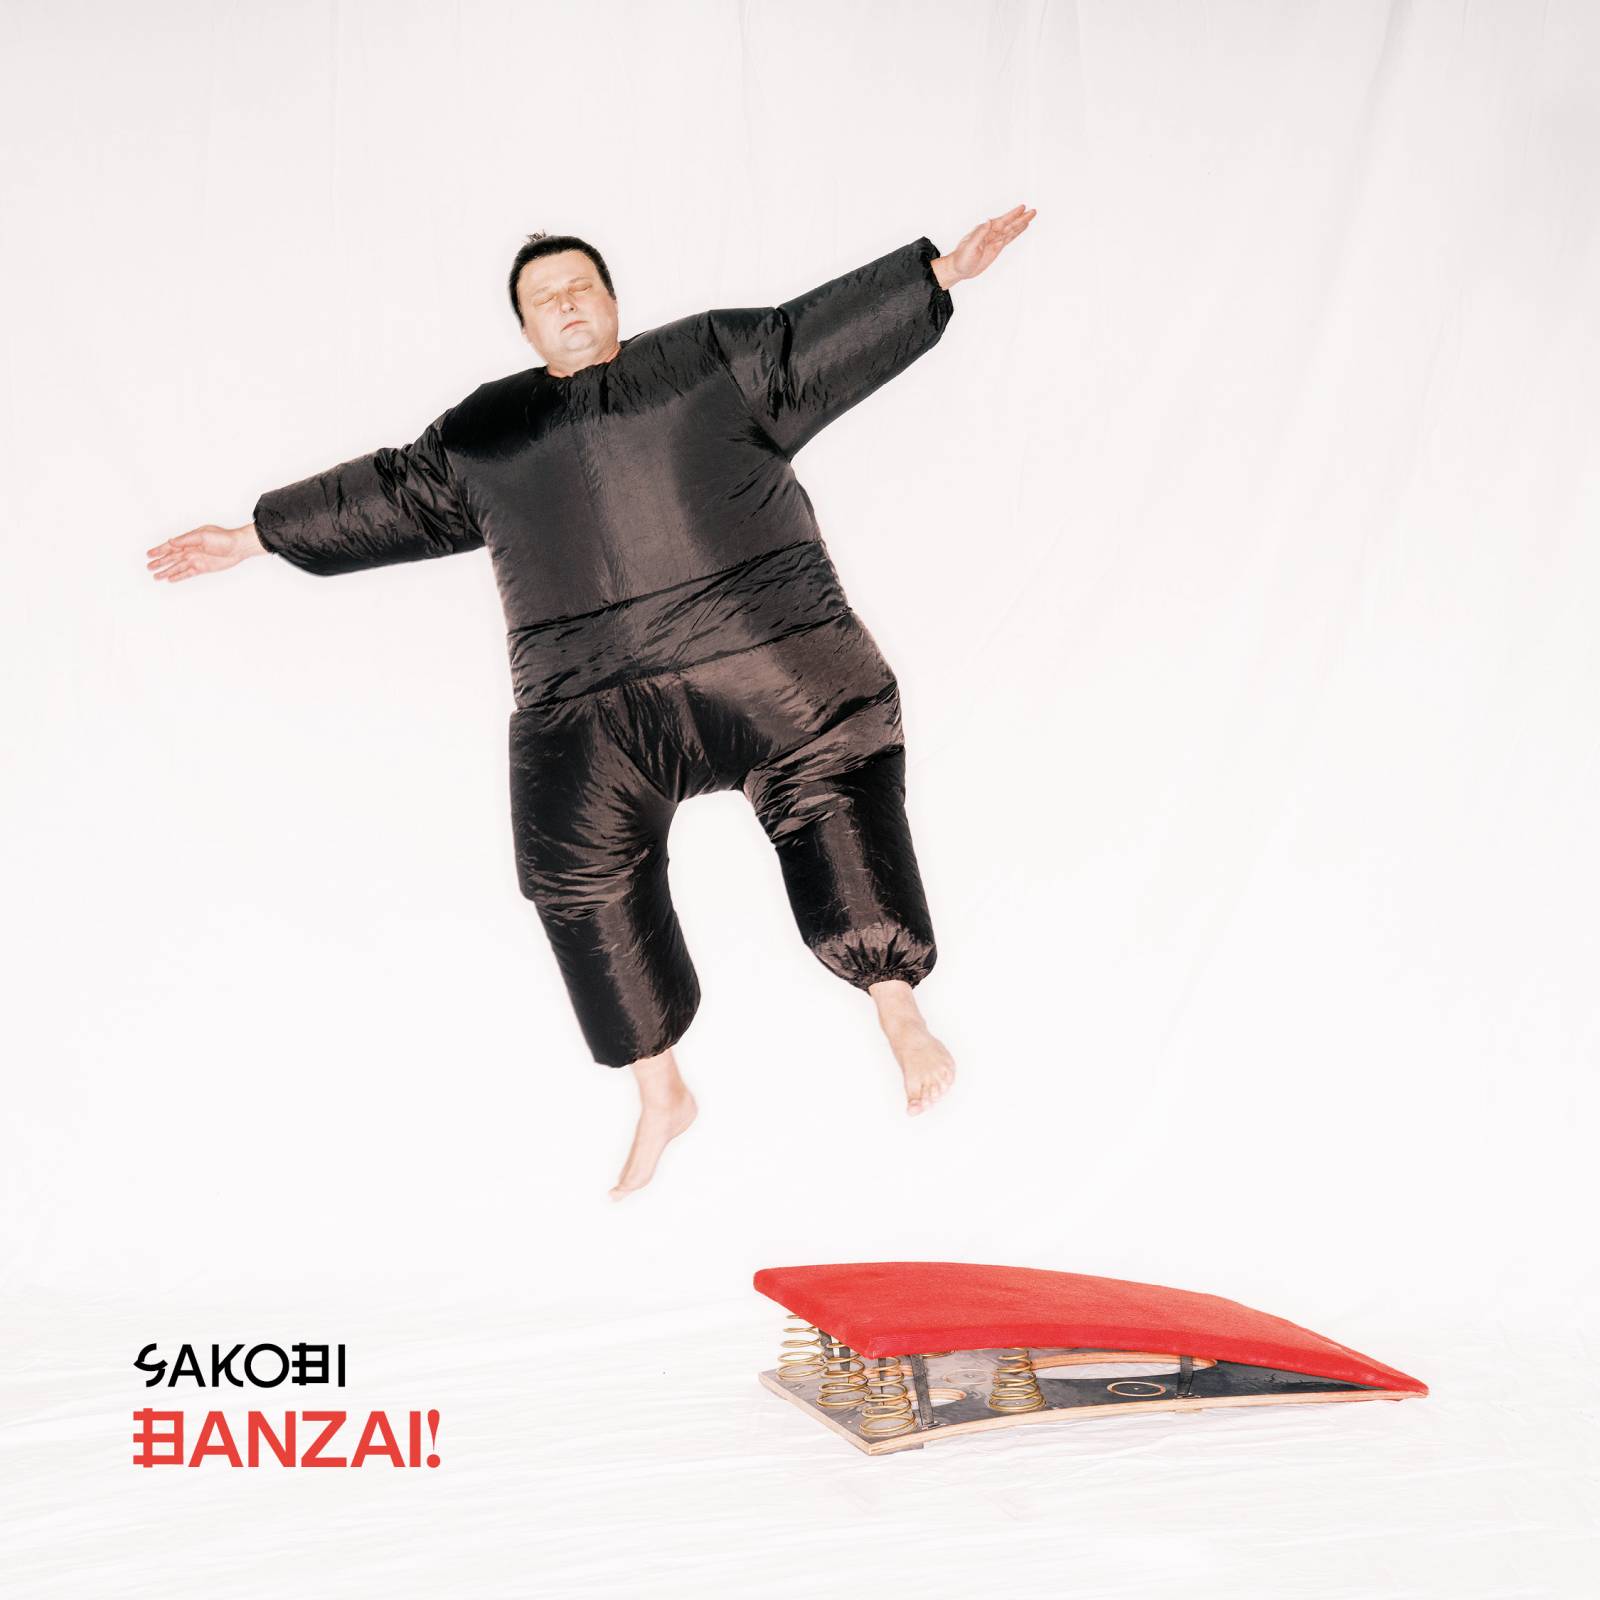 Trio SAKOBI vydává debutové album Banzai! inspirované jazzem a world music